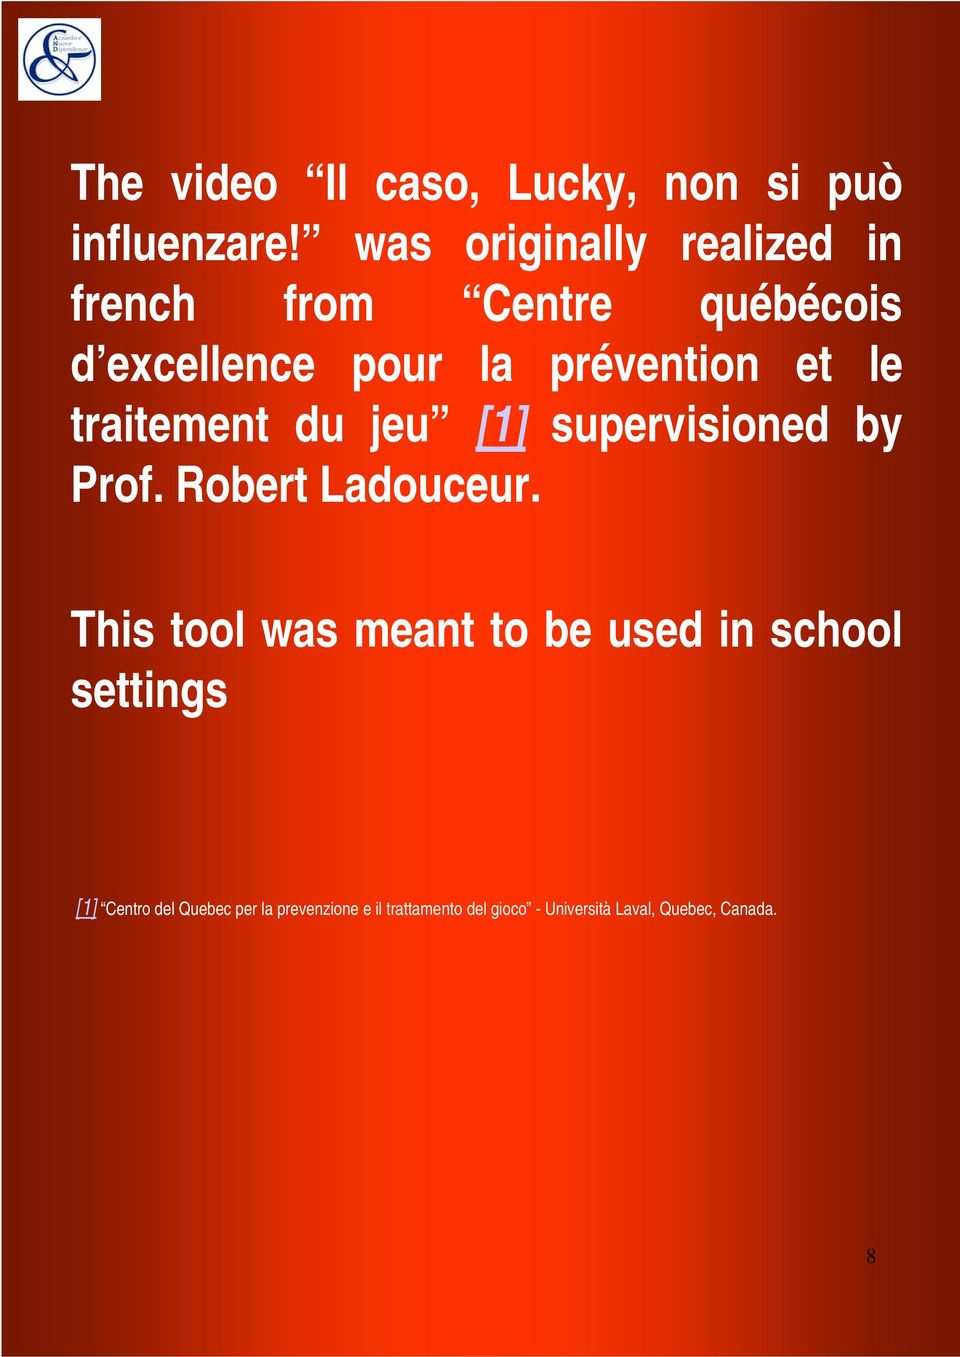 le traitement du jeu [1] supervisioned by Prof. Robert Ladouceur.